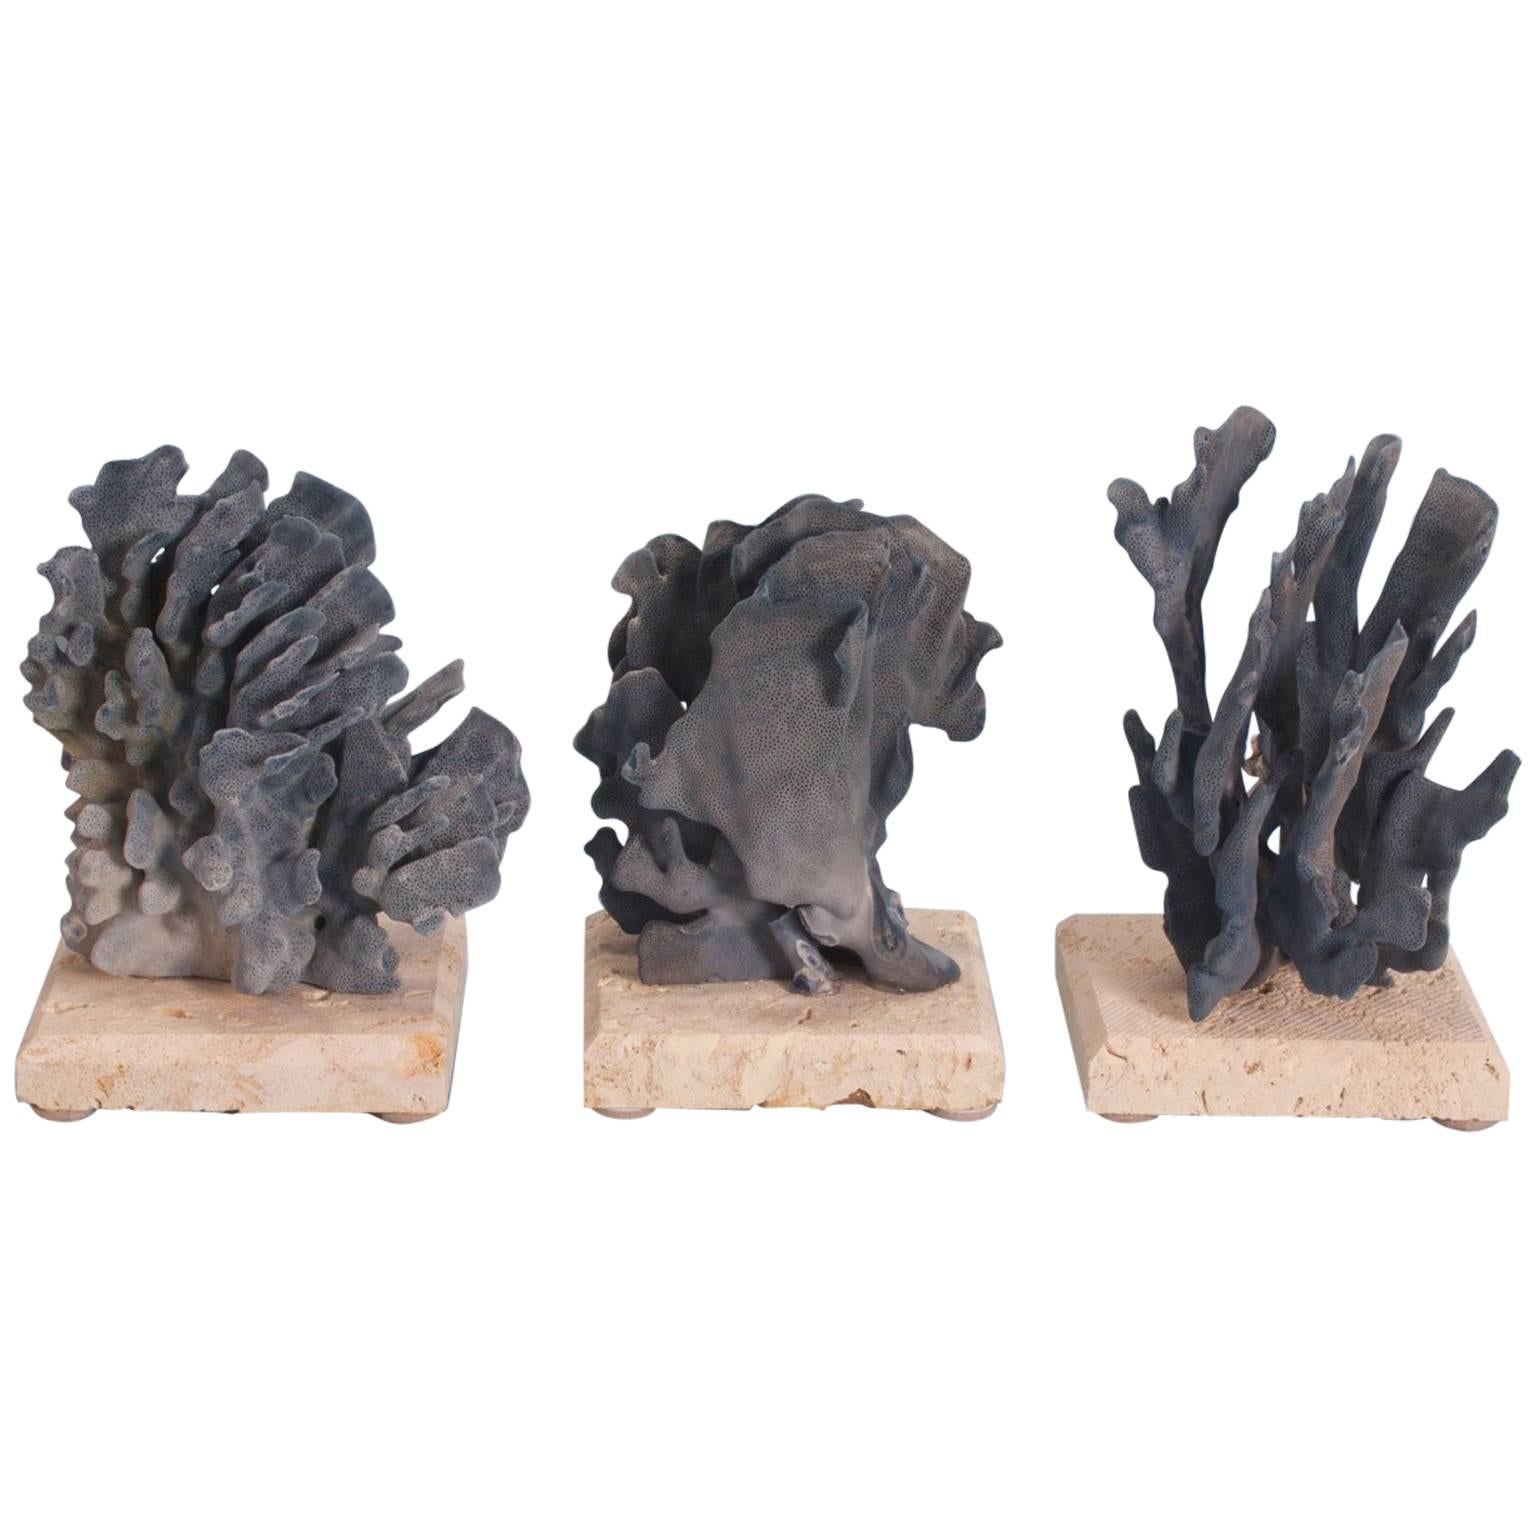 Drei inspirierende organische Skulpturen aus blauer Koralle, einzeln preislich